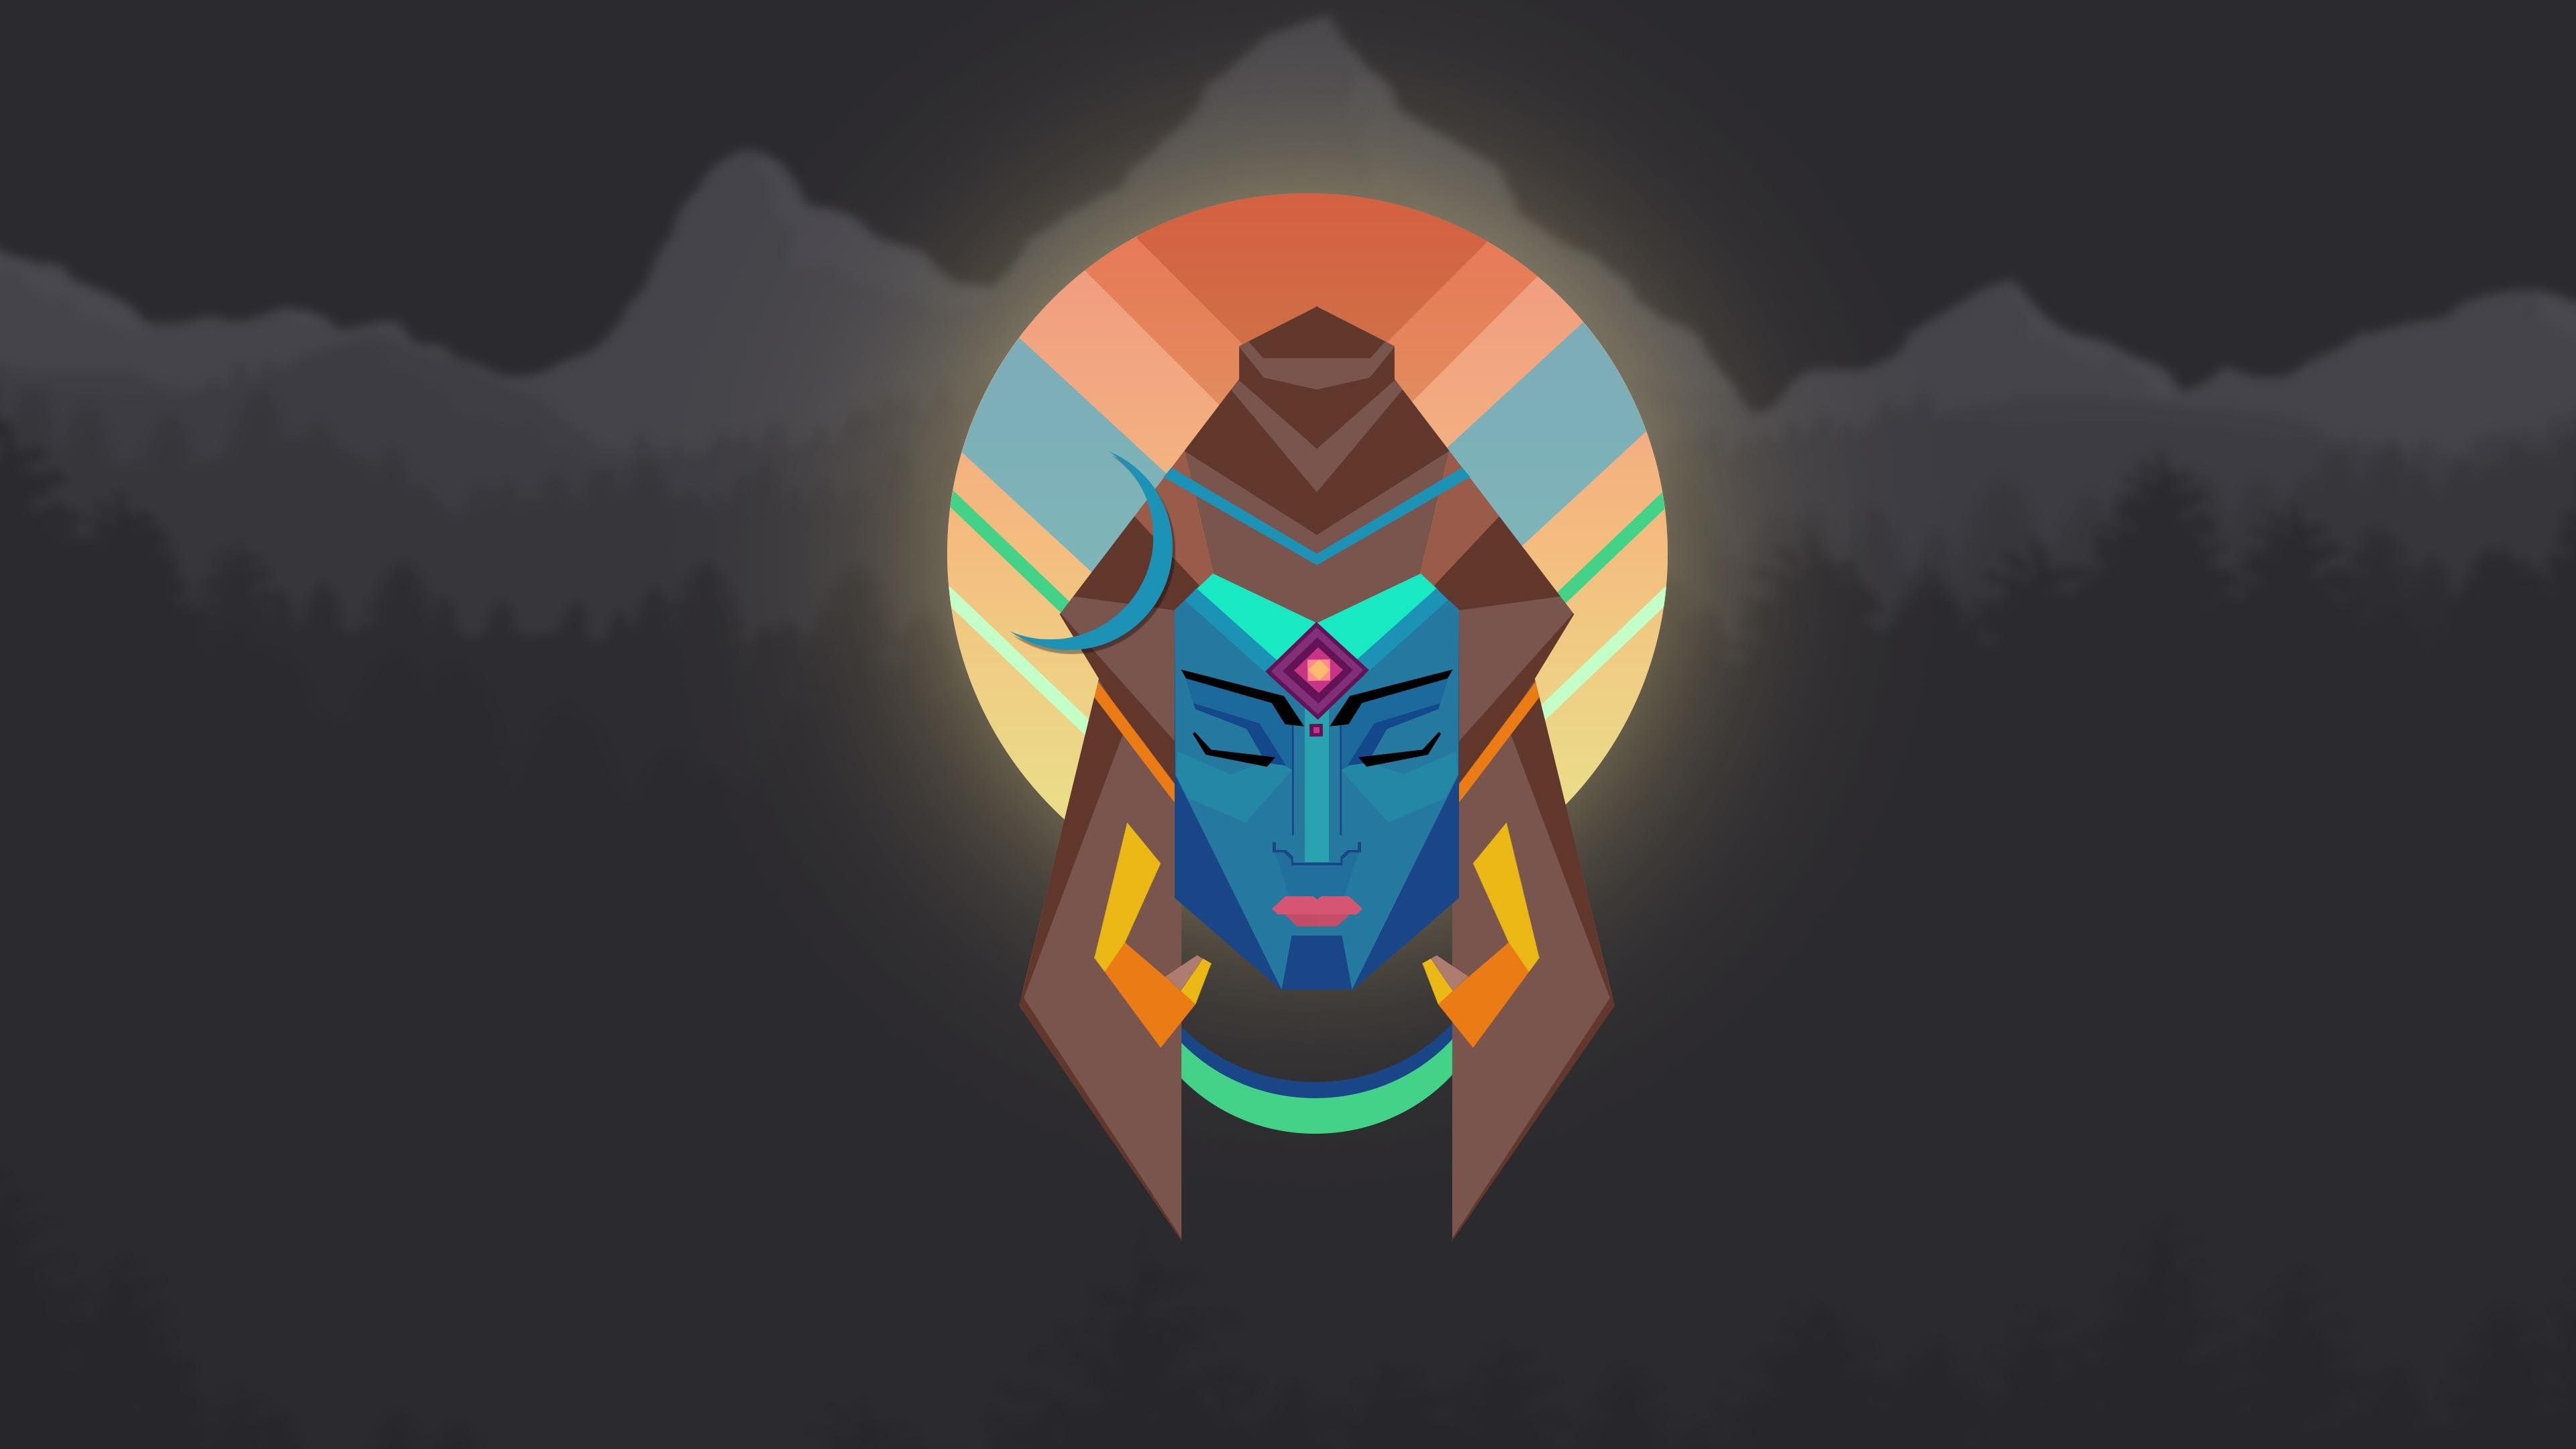 Lord Shiva Wallpaper HD